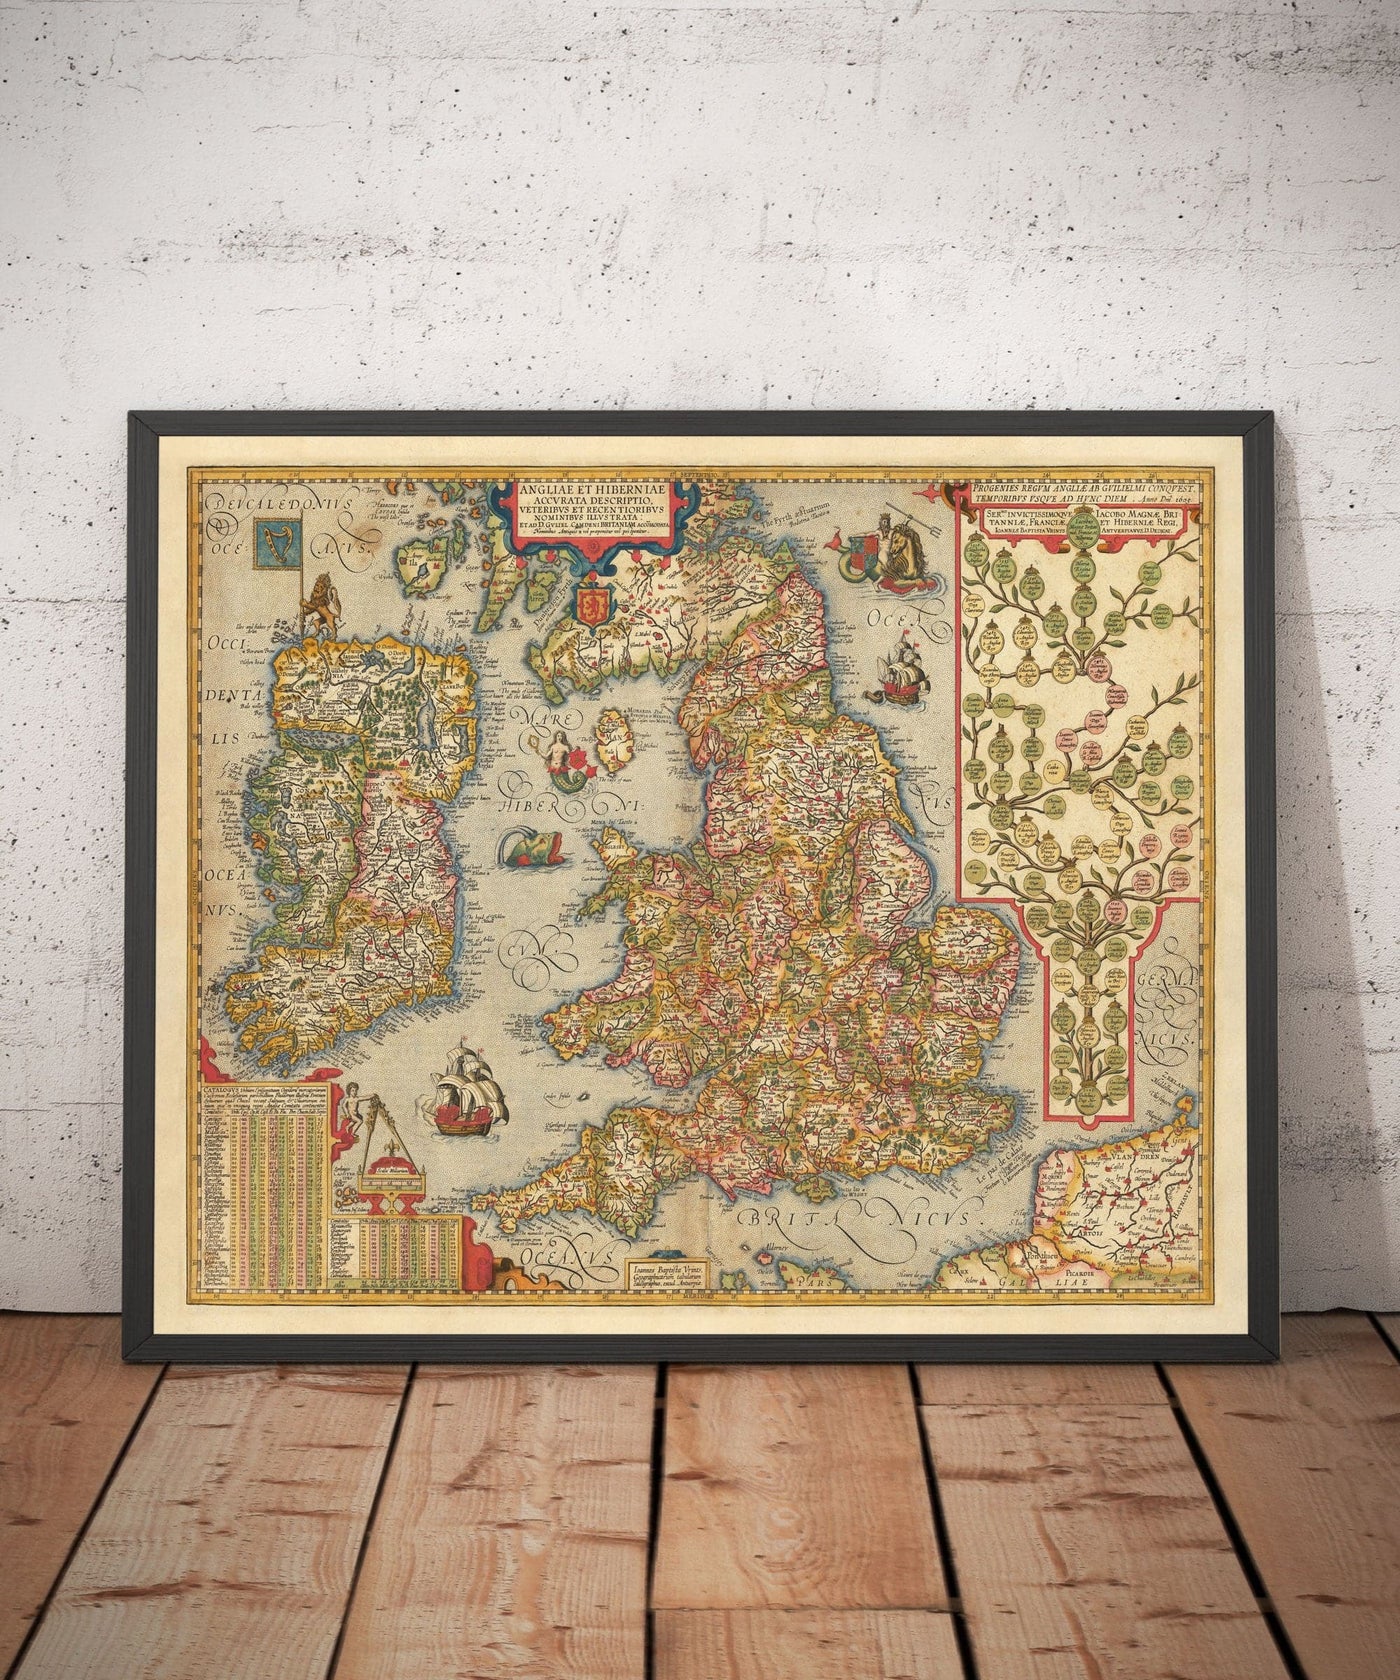 Alte Farbkarte von England und Irland im Jahr 1605 von Abraham Ortelius